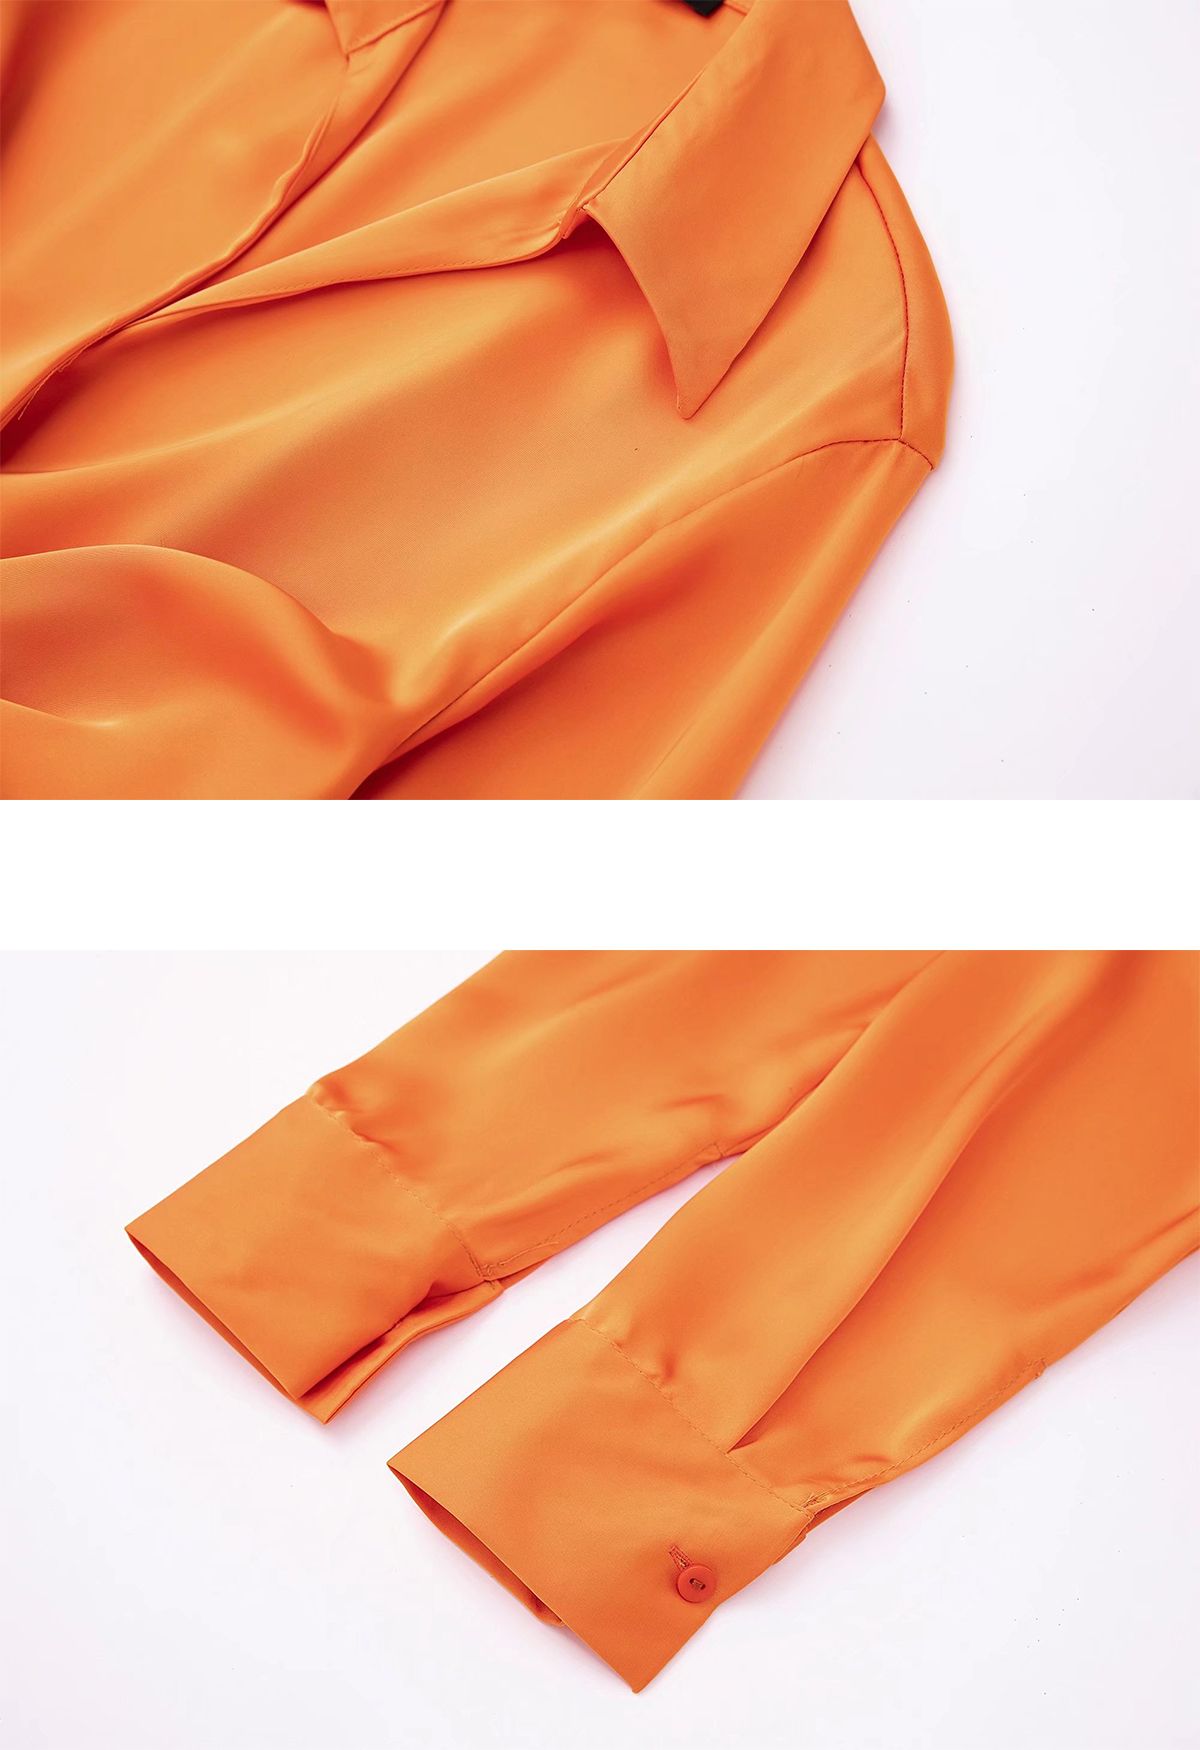 V-Neck Ruched Front Satin Shirt Dress in Orange